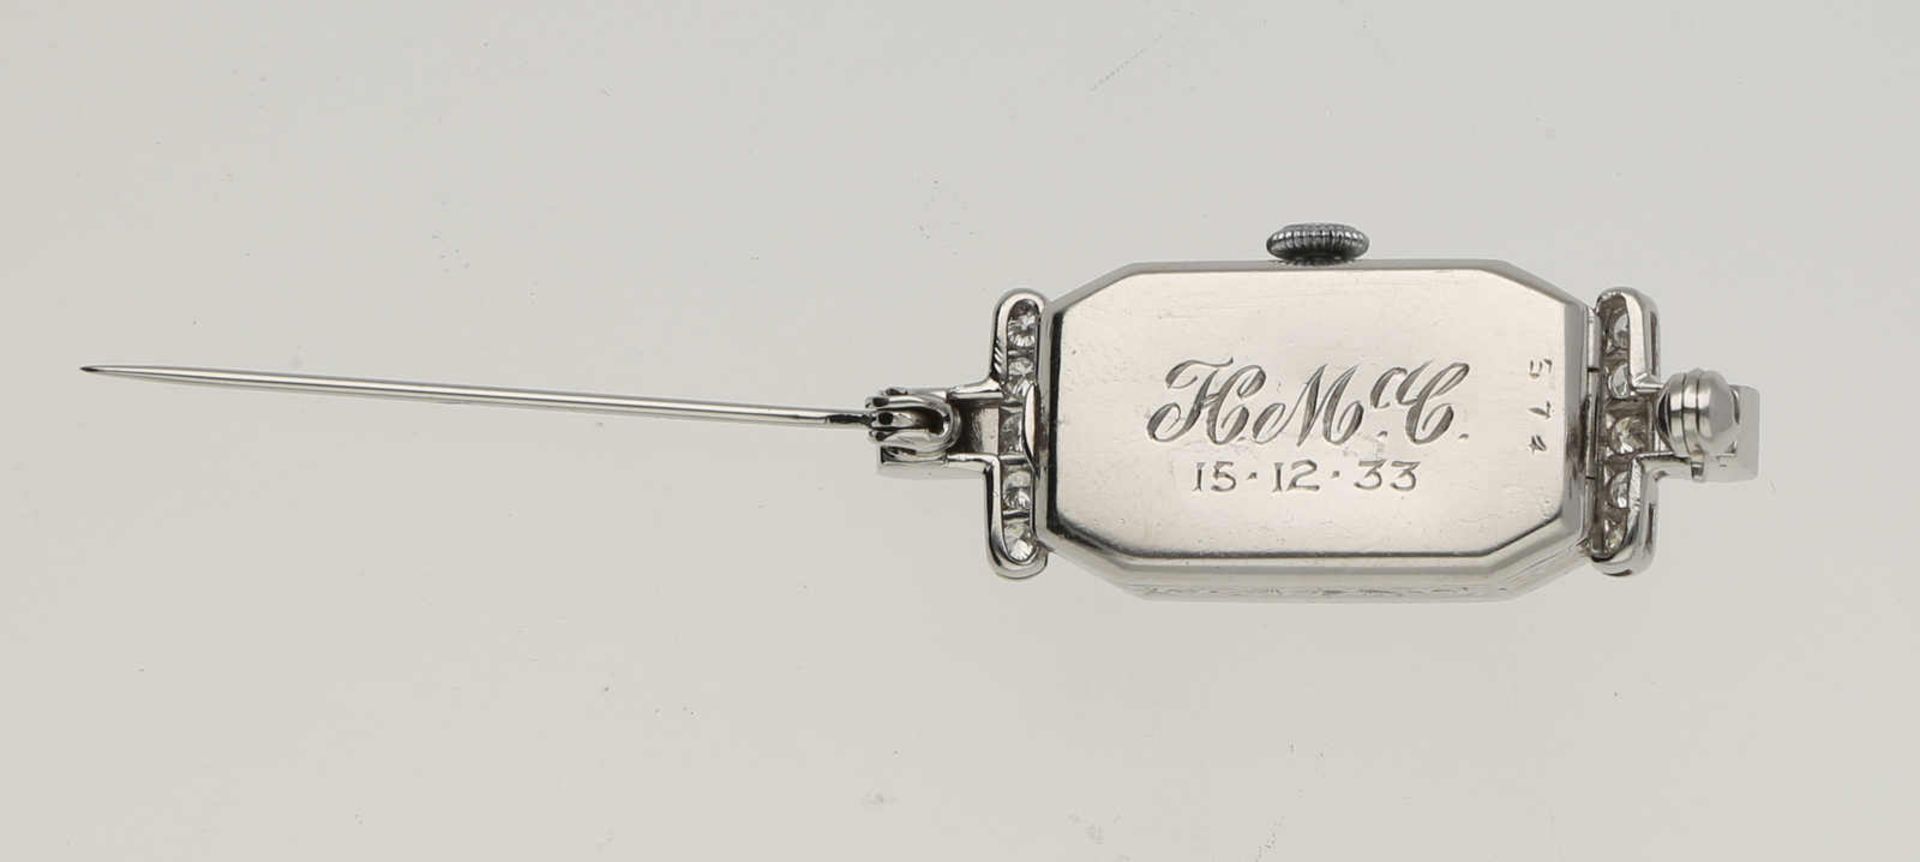 Diamant-Uhrenbrosche Stilvolle Uhrenbrosche in Platin 950 schauseitig verziert mit Diamanten von - Image 3 of 3